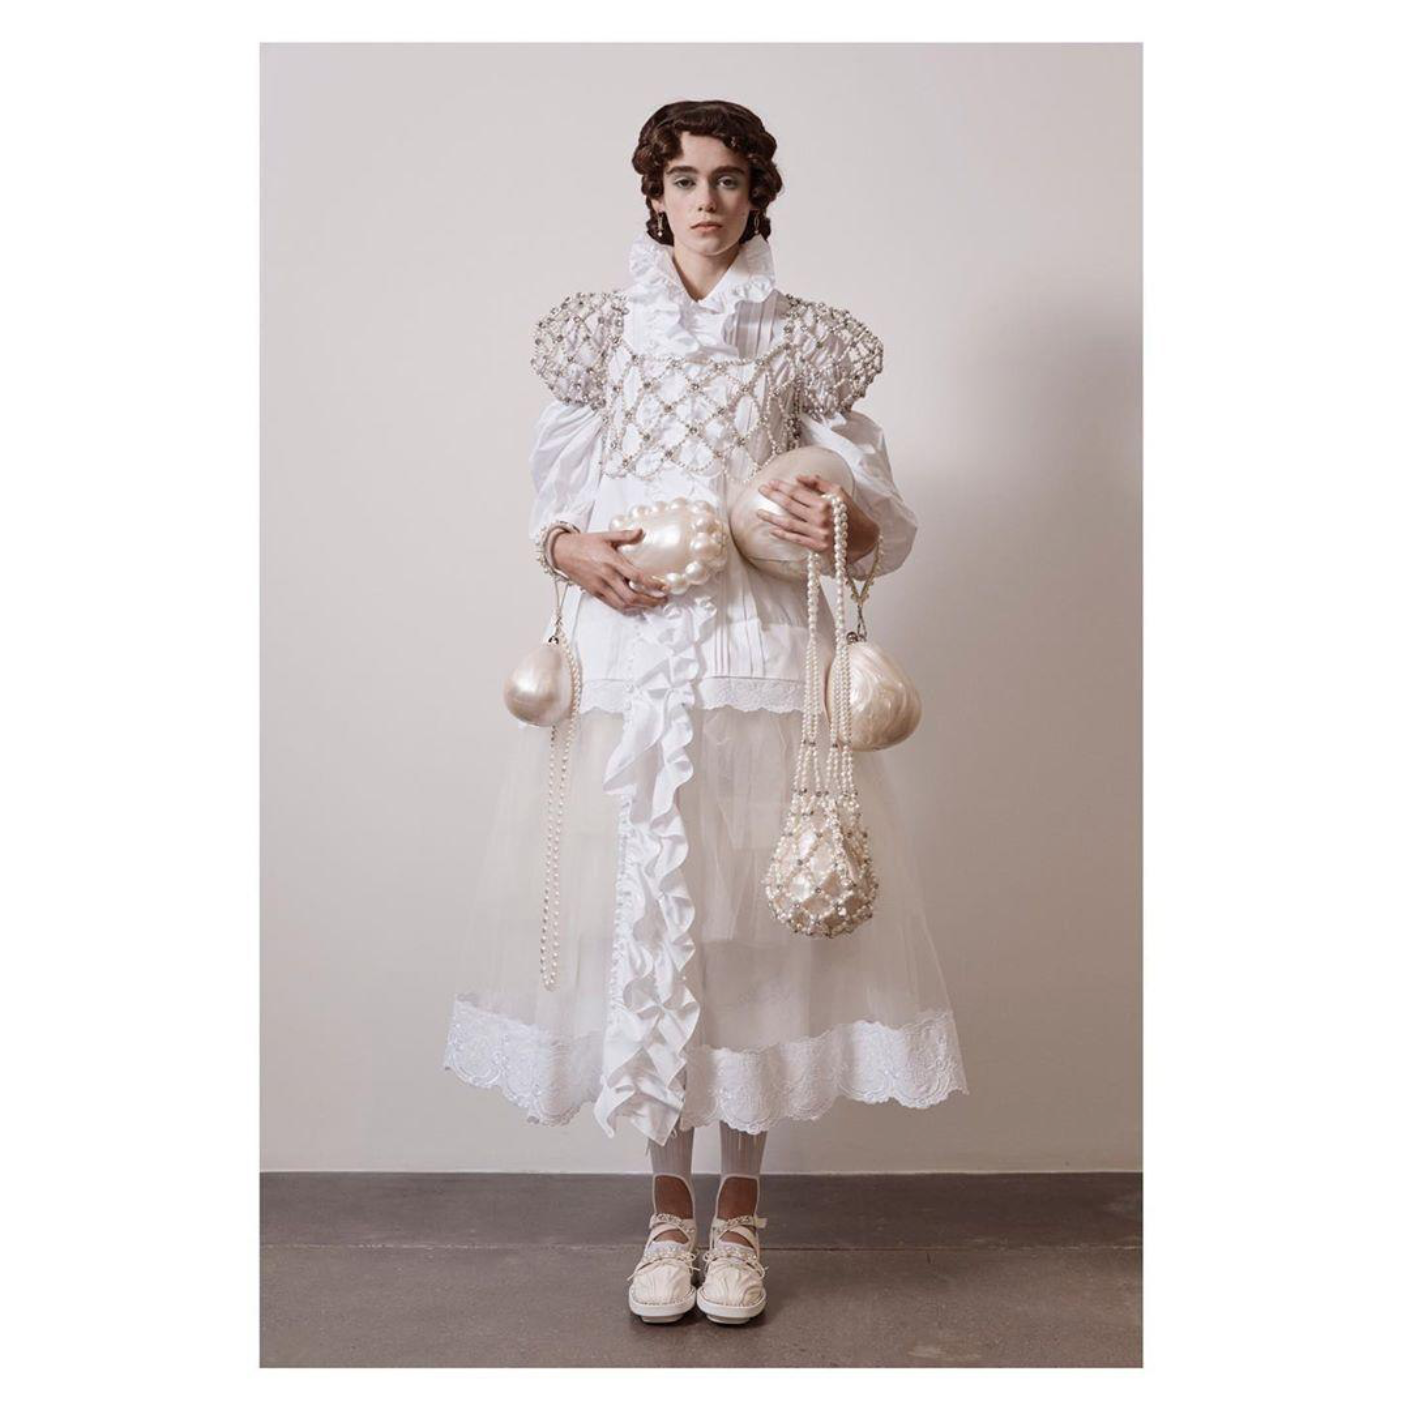 Power-dressing для принцесс — в новой коллекции Simone Rocha